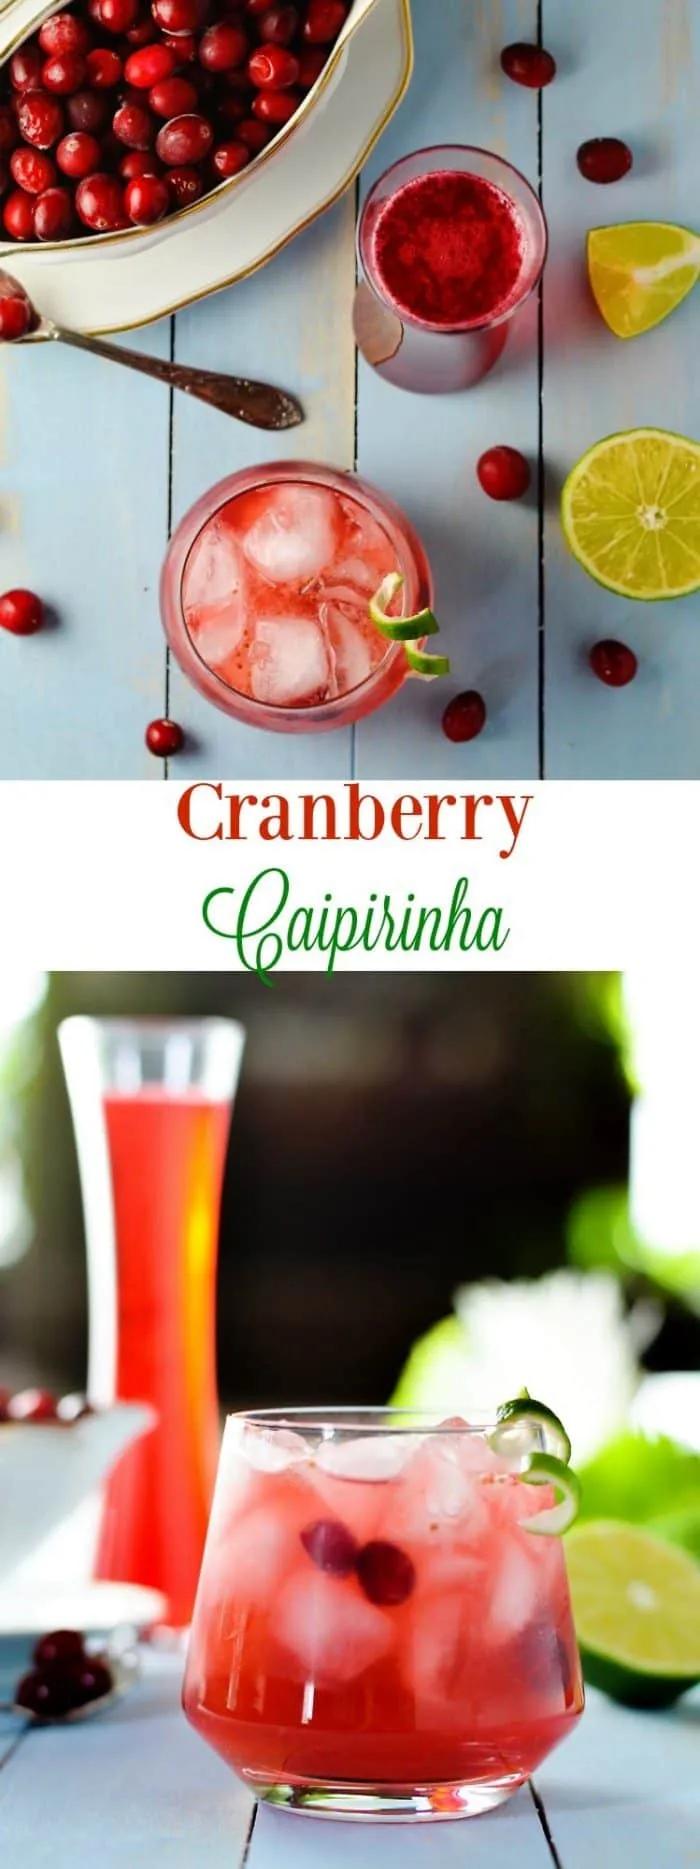 Cranberry Caipirinha - The Melrose Family